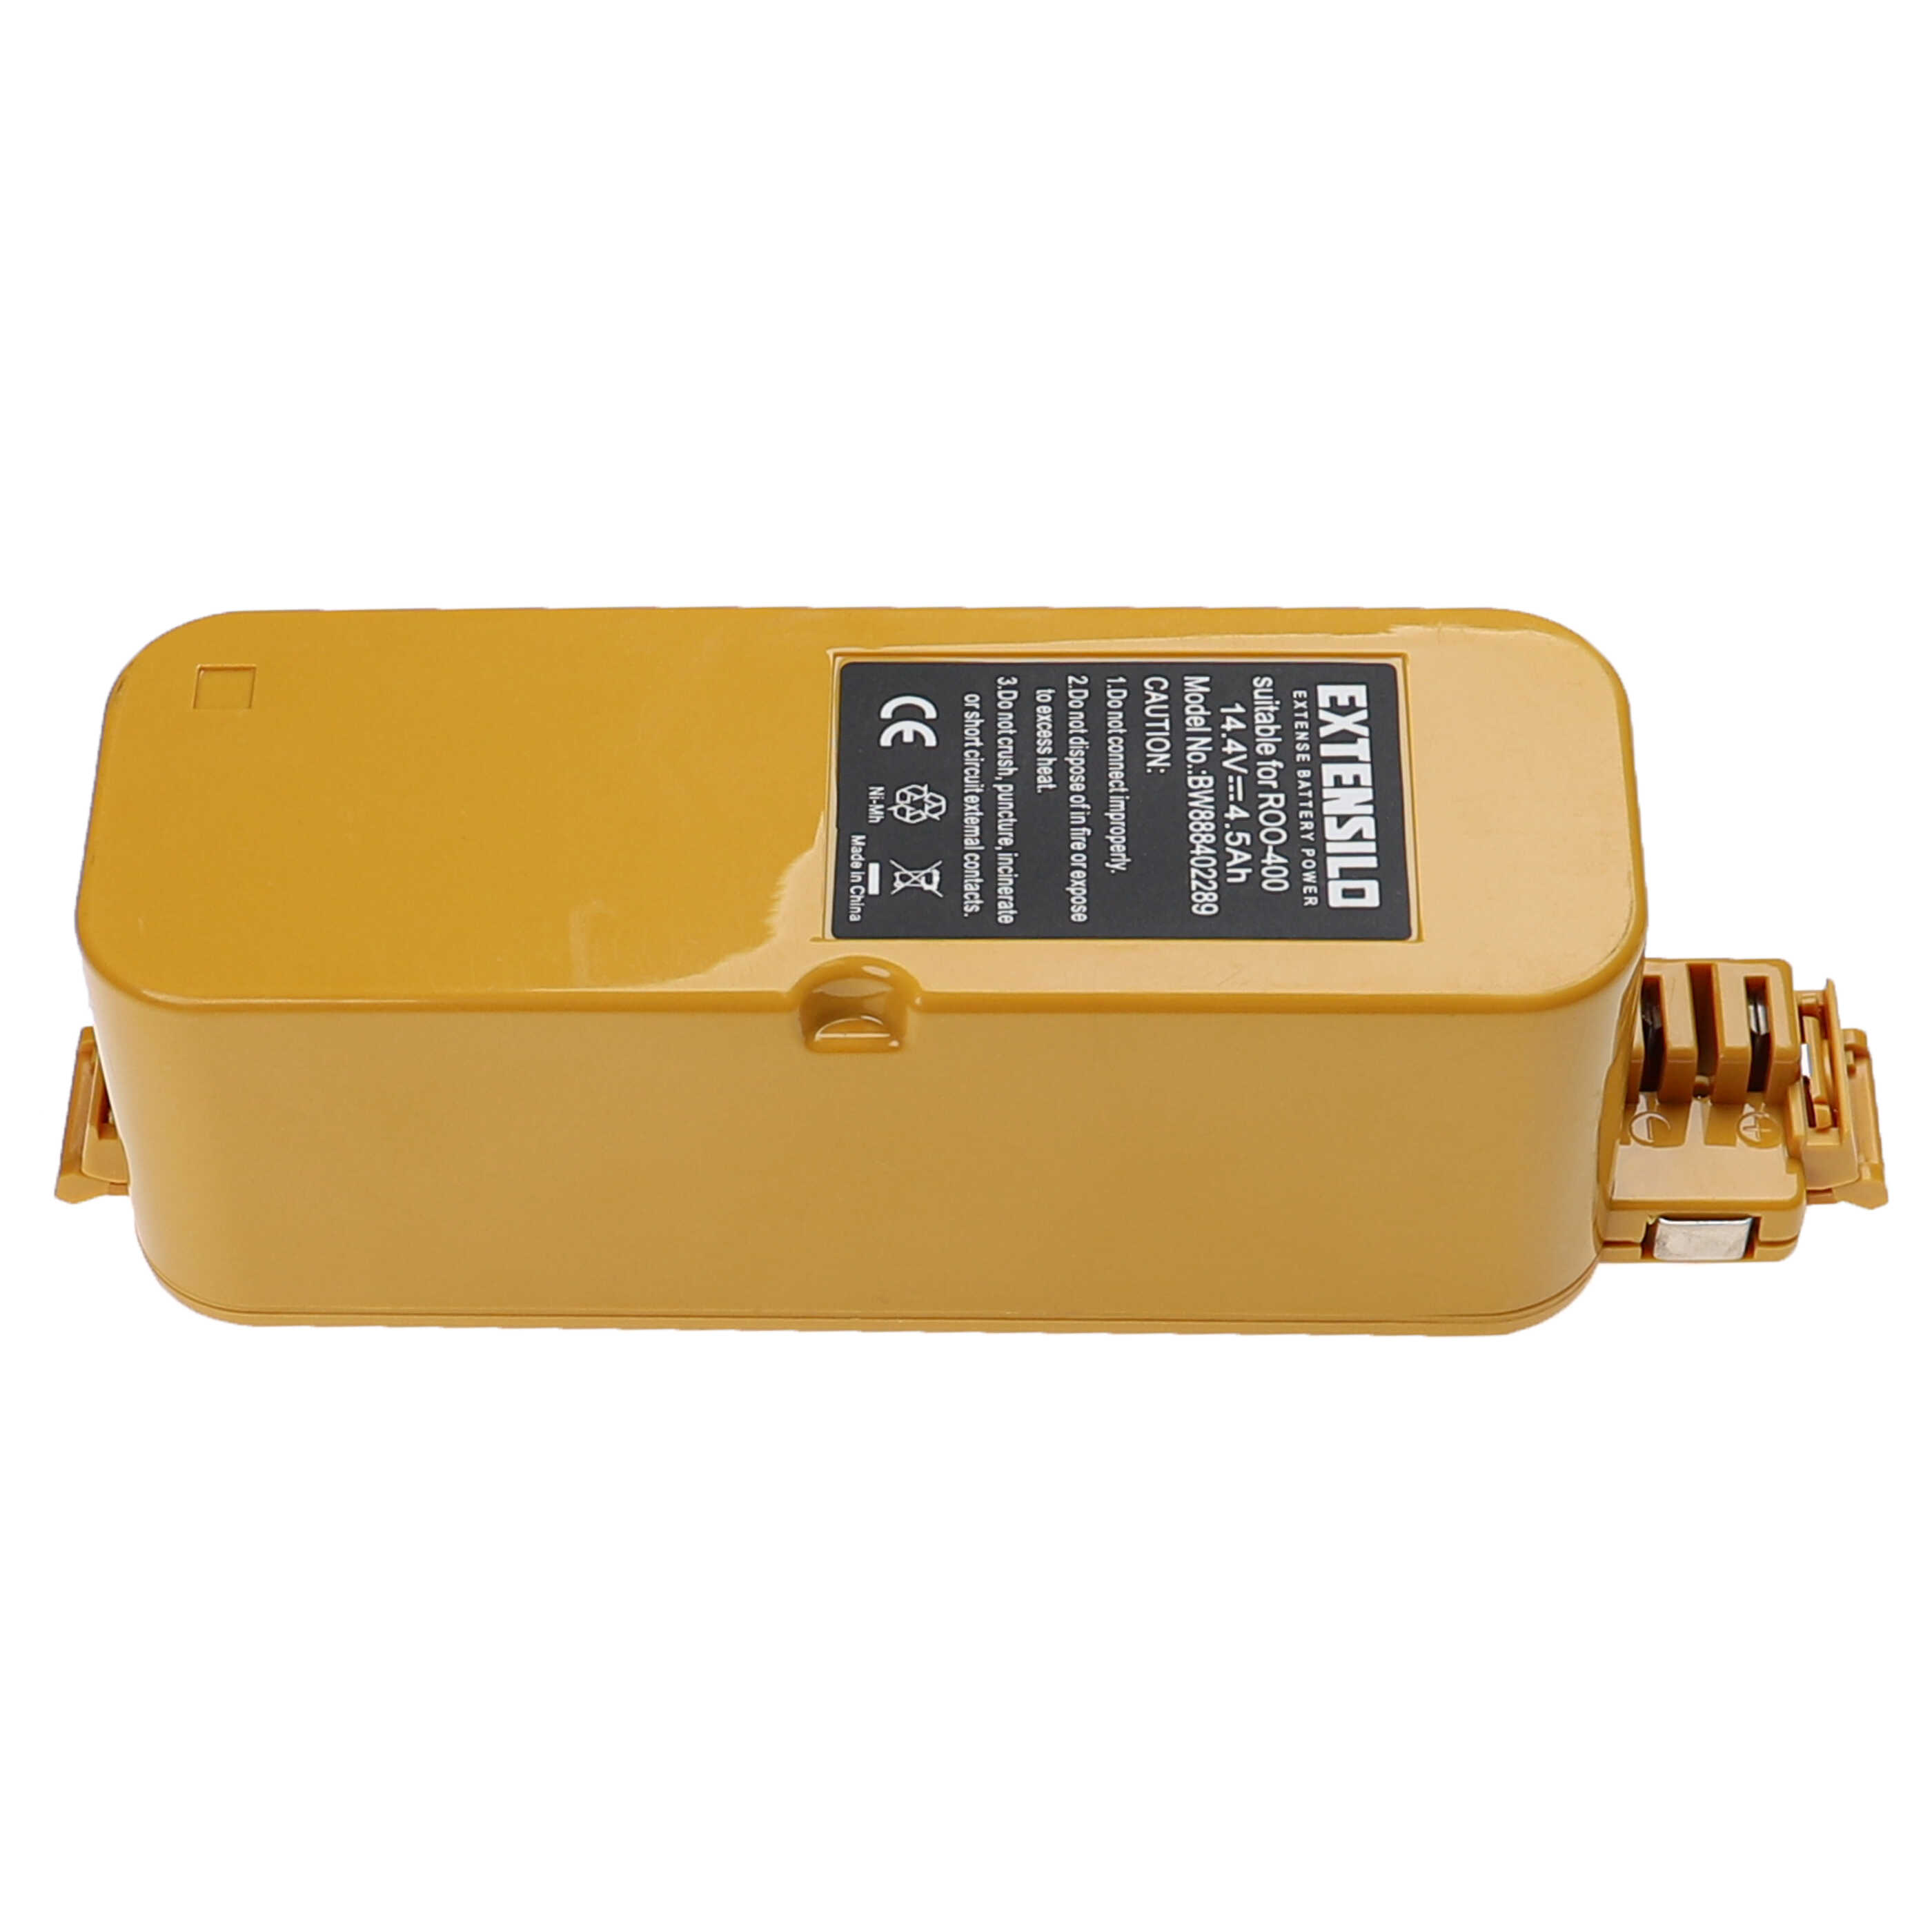 Batería reemplaza APS 4905, NC-3493-919, 11700, 17373 para aspiradora iRobot - 4500 mAh 14,4 V NiMH amarillo